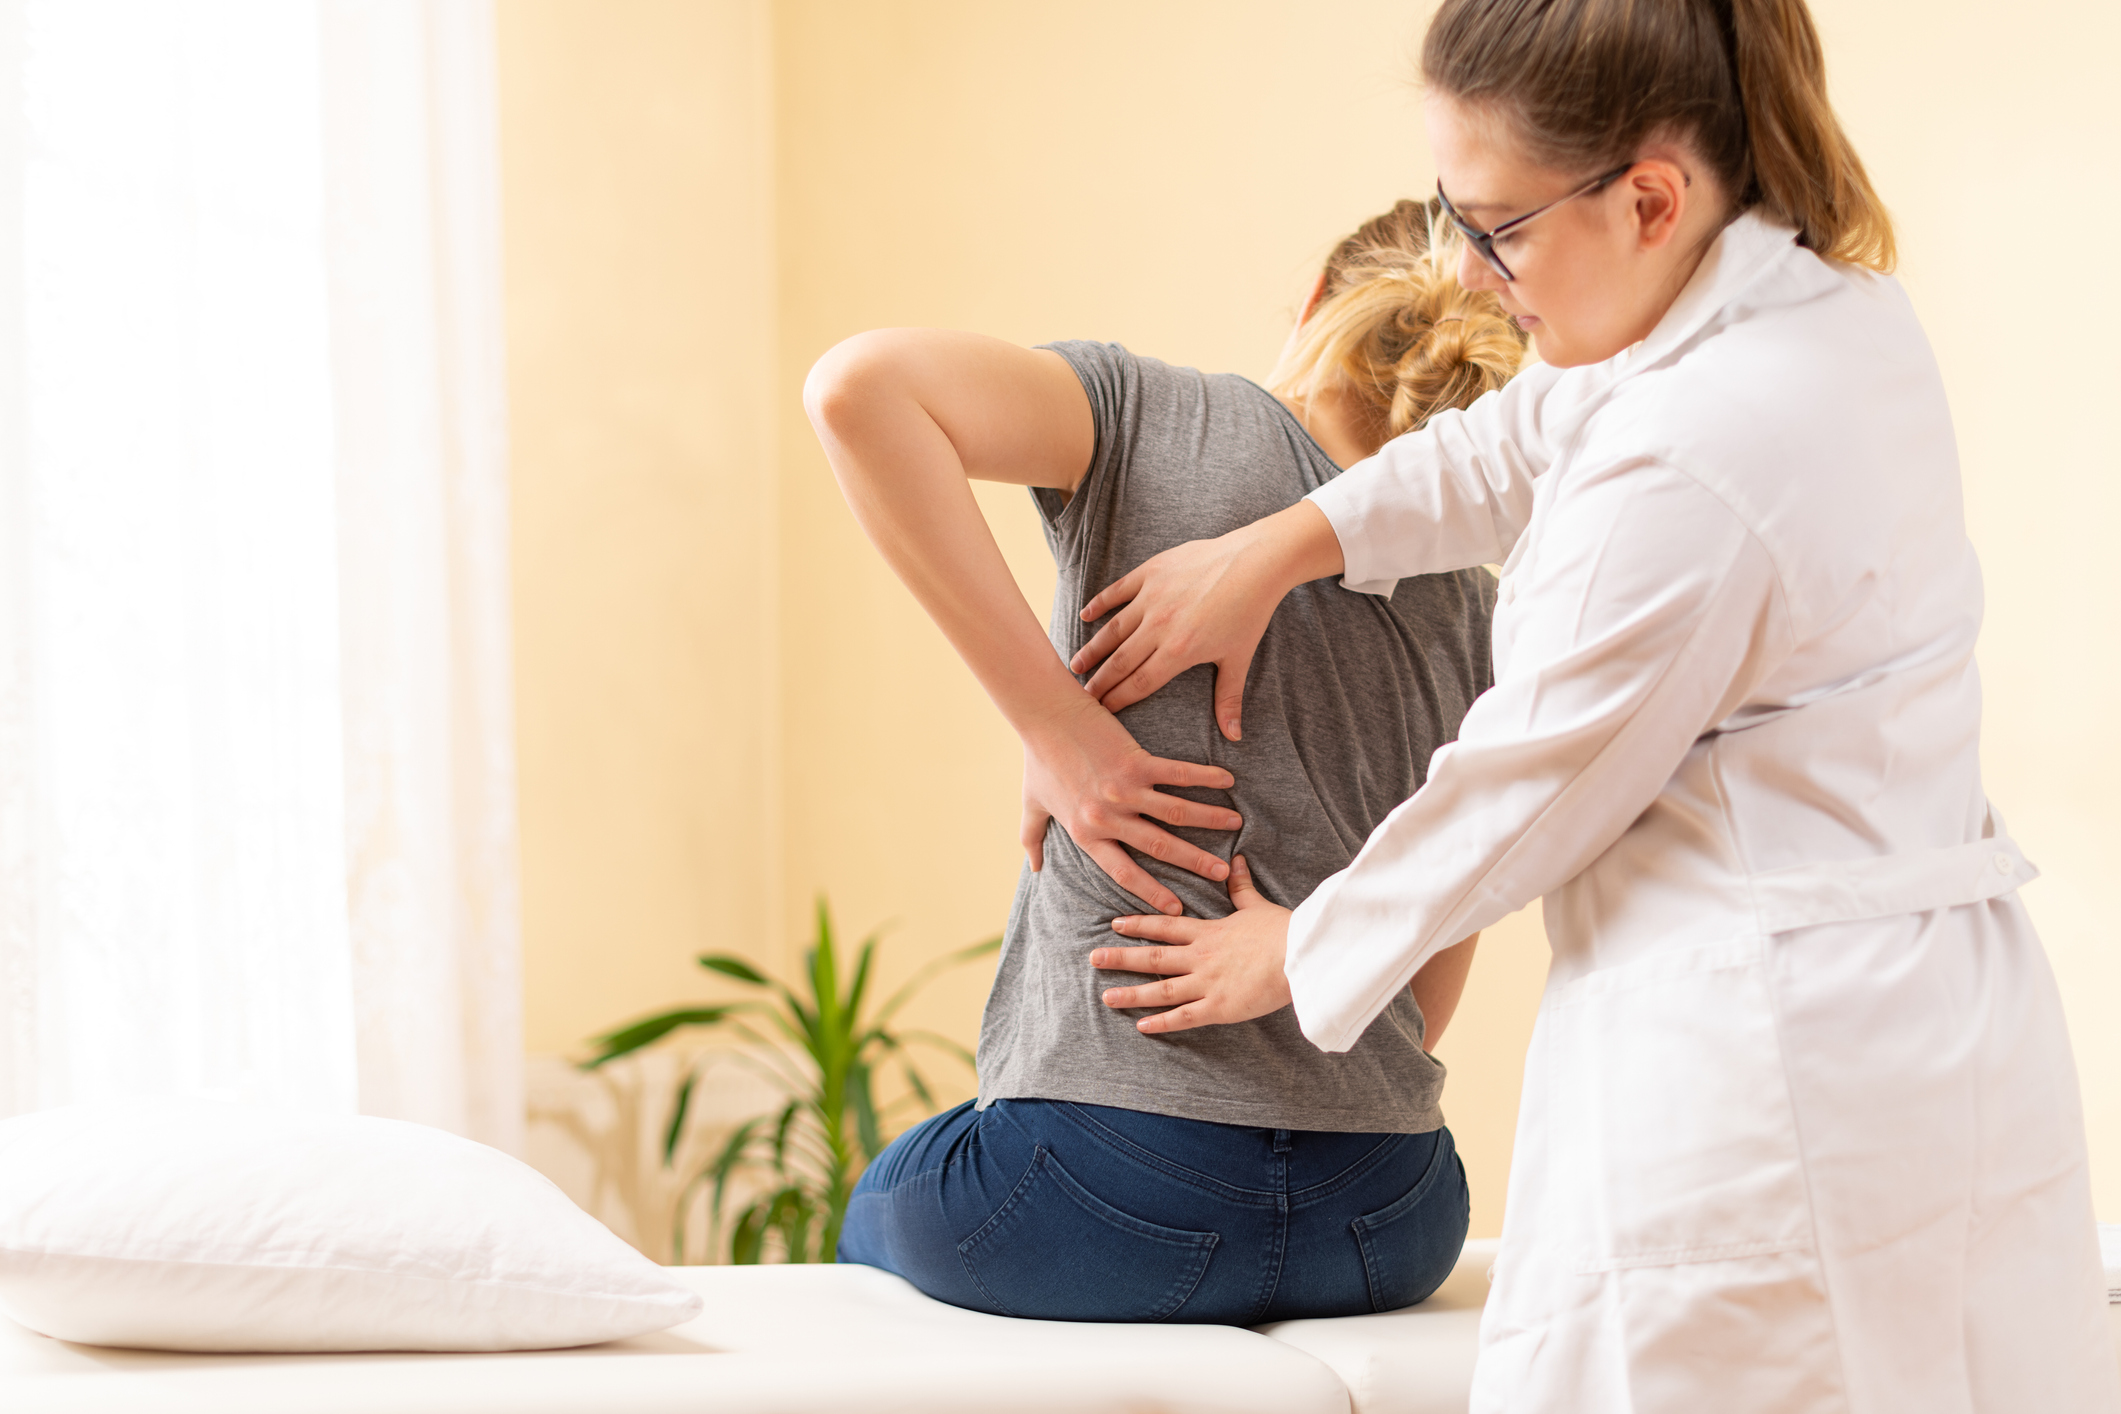 Πόνος στην πλάτη: Οι 6 πιο συνηθισμένες αιτίες